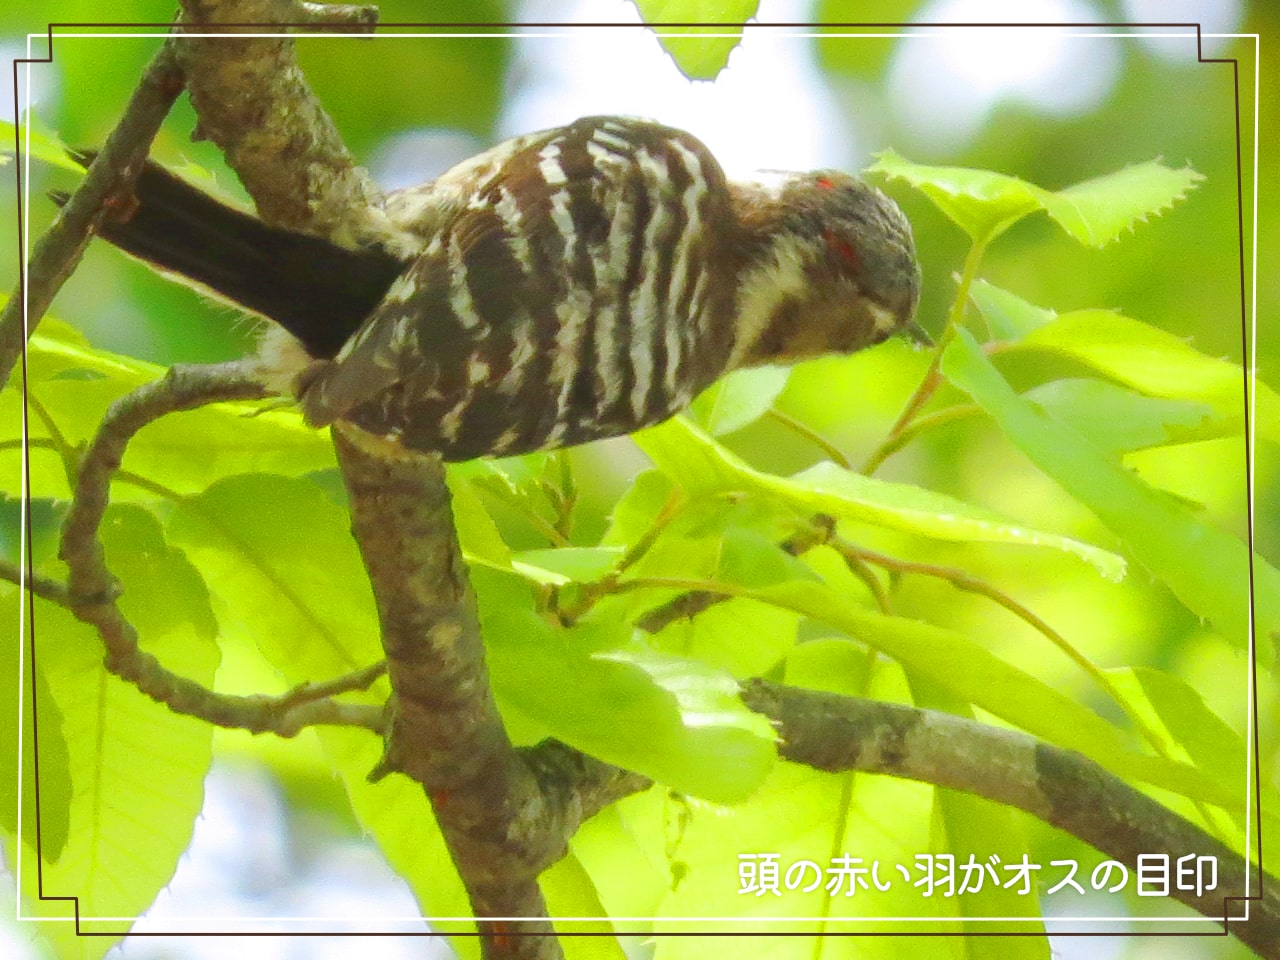 頭に小さな赤い羽があるオスのコゲラの写真